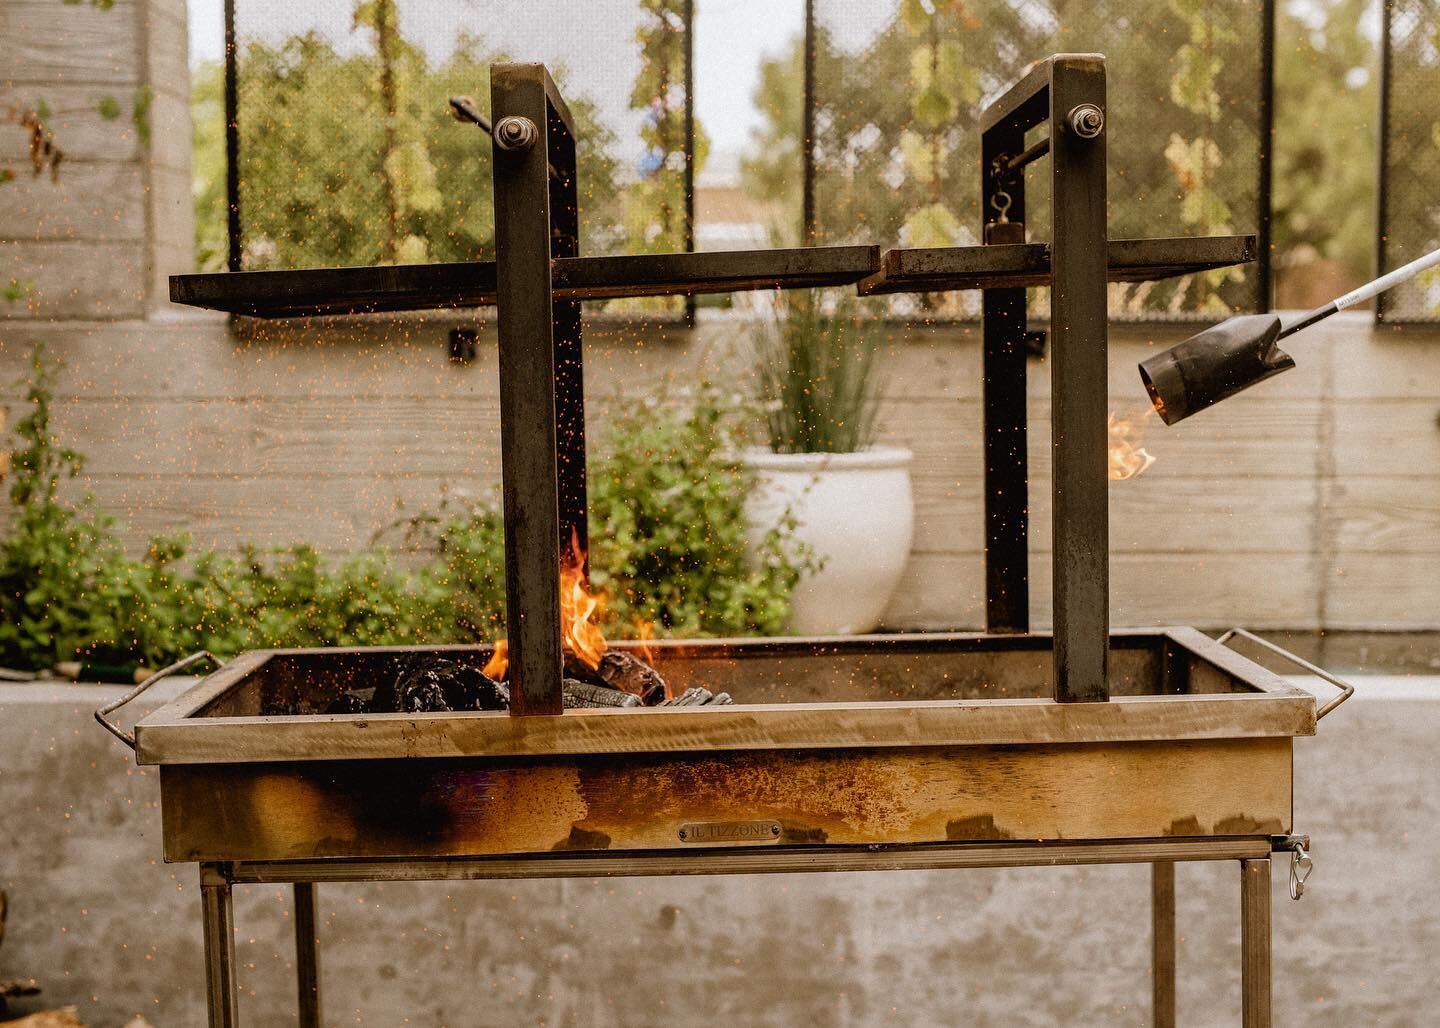 Patio grilling season will be here soon, menu planning happening now.

📸 @benlindbloom